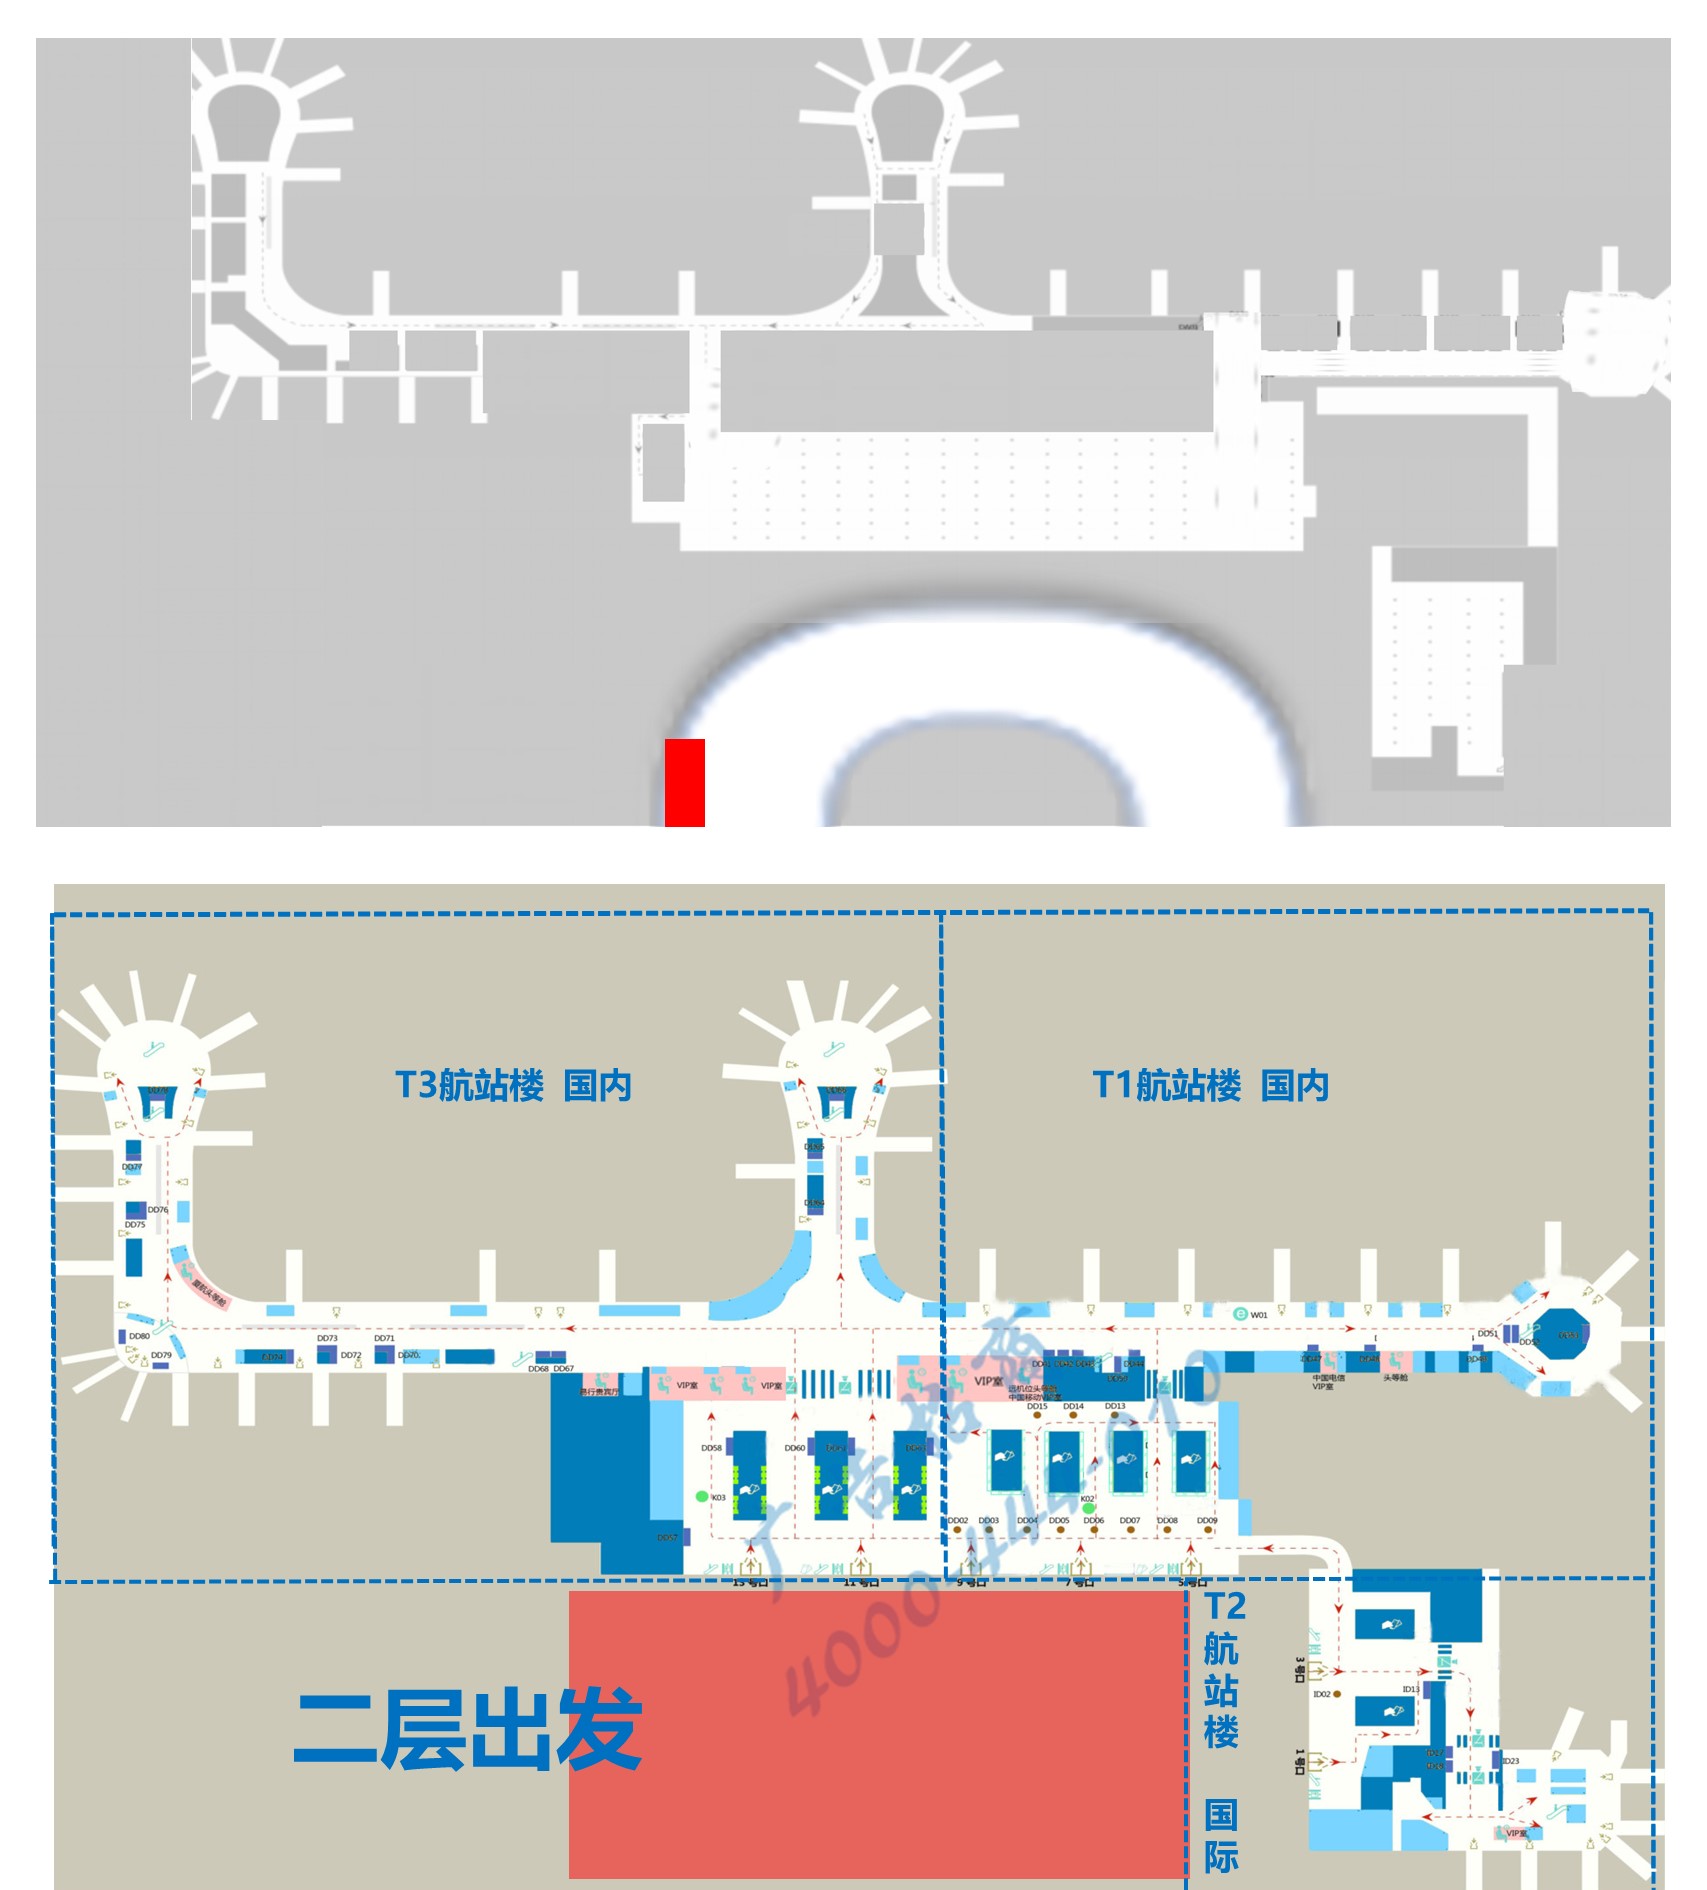 杭州萧山机场广告-T3航站楼下桥处灯箱TAXI02位置图